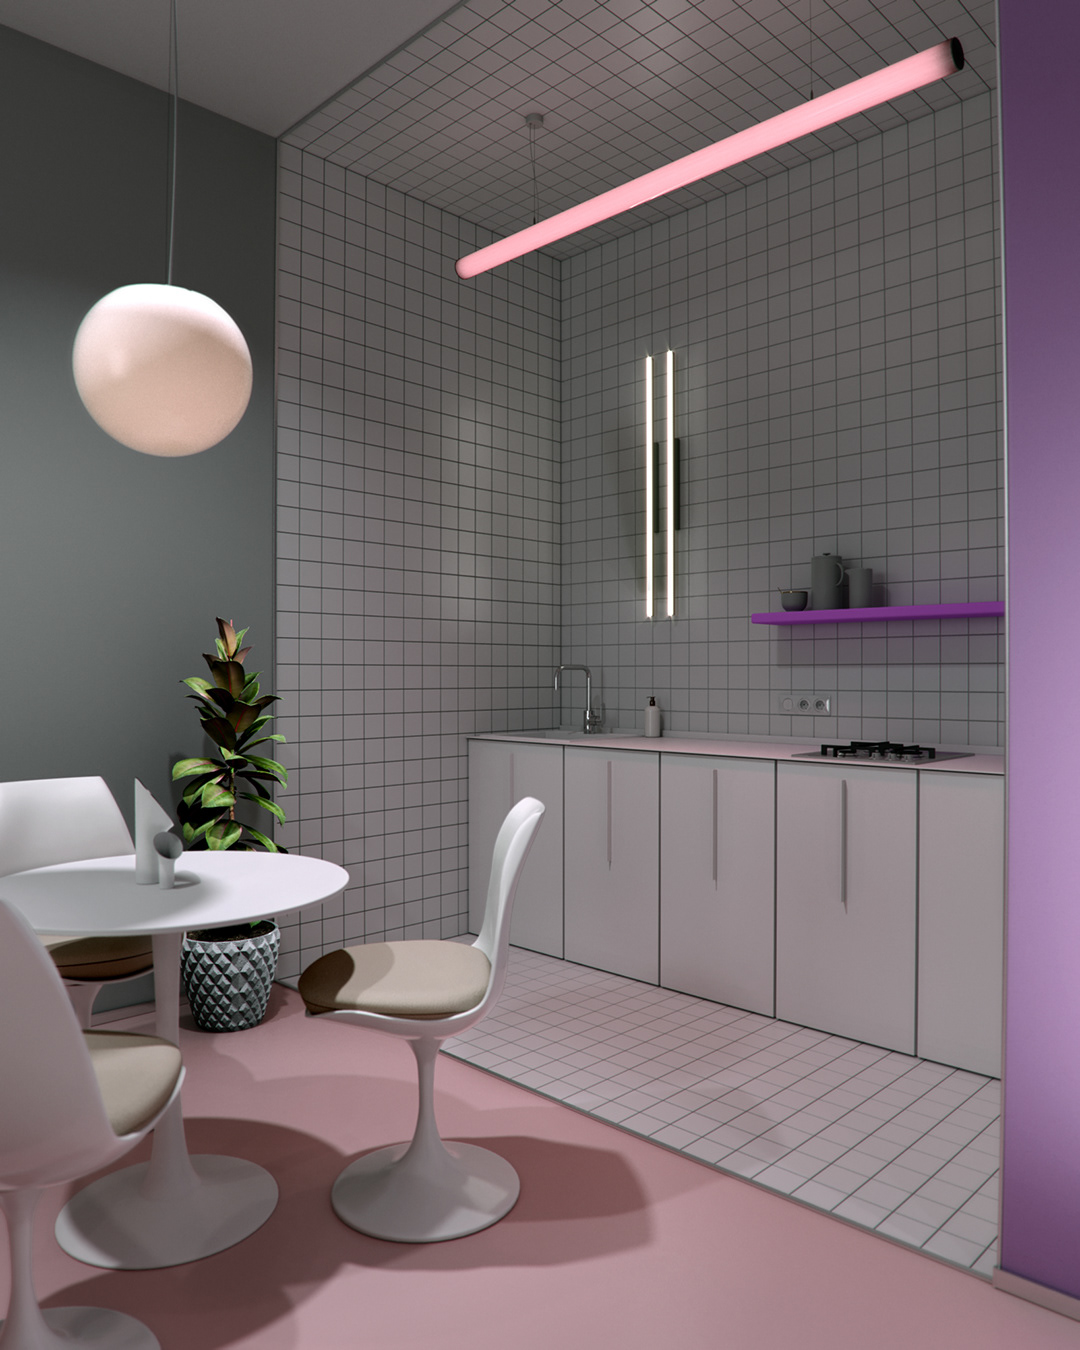 3D 3dsmax apartment apartmentdesign coronarenderer design Interior interiordesign smallspace